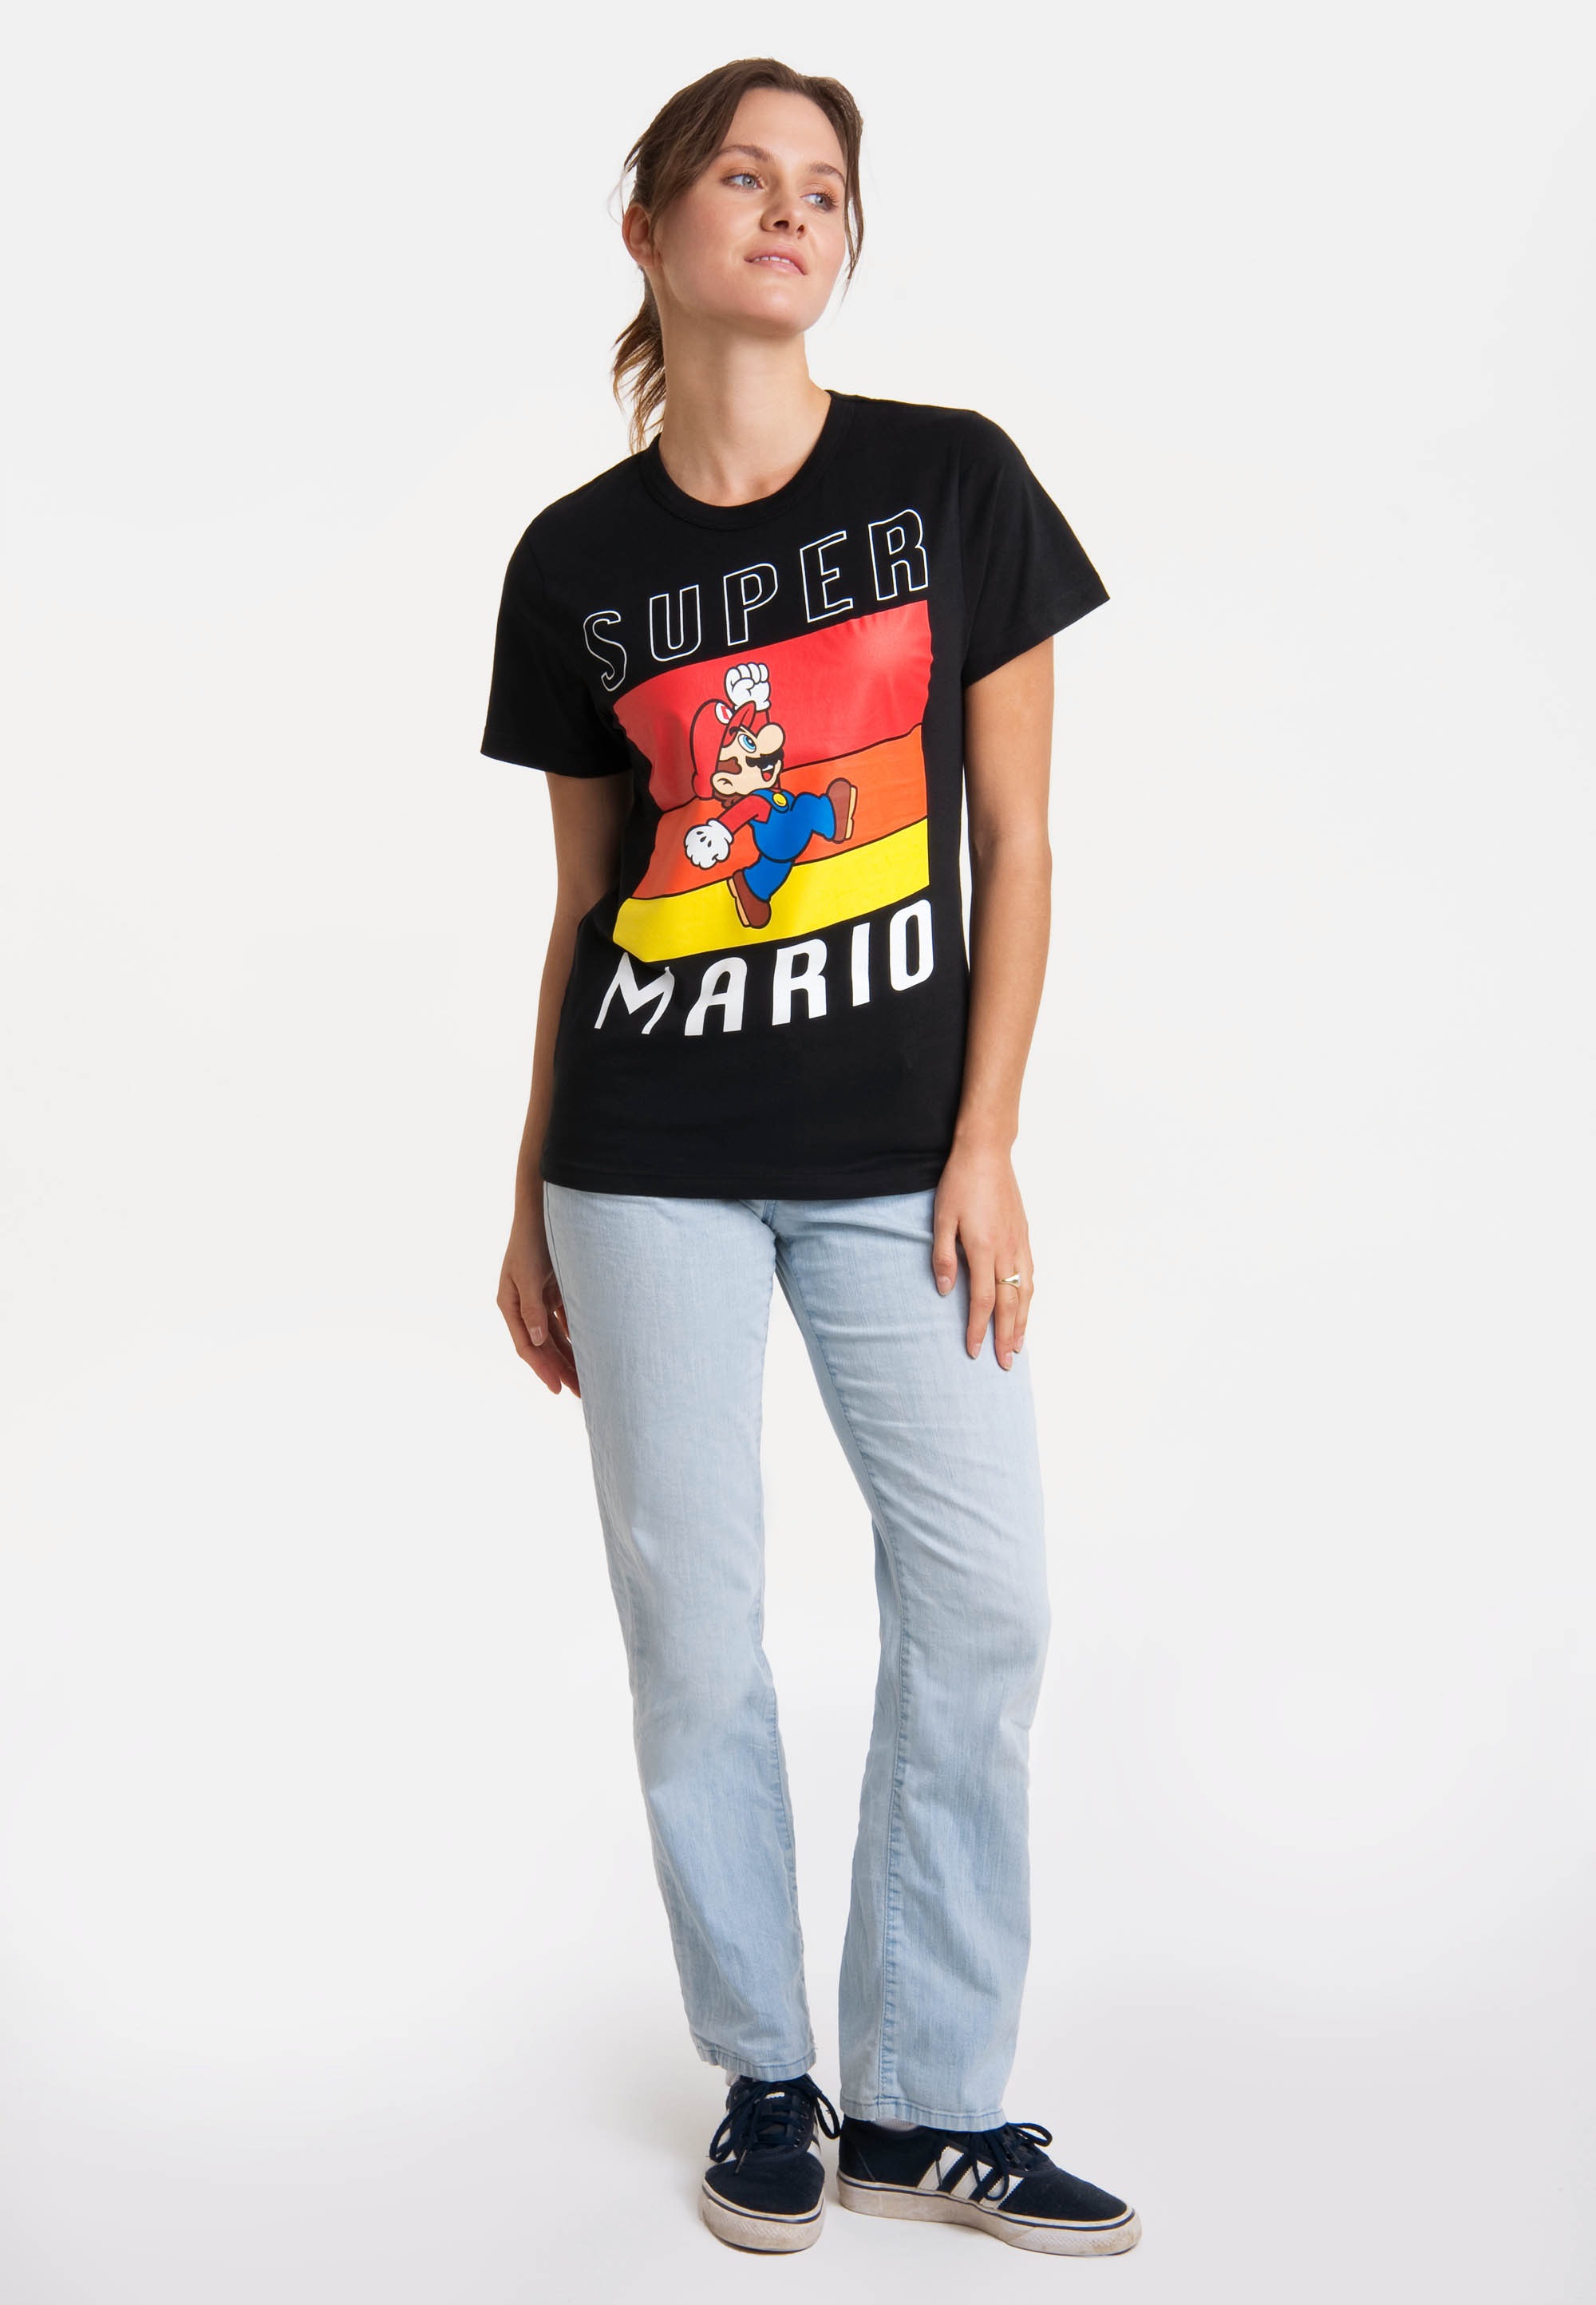 Jump«, T-Shirt Mario LOGOSHIRT BAUR für mit - Print »Super kaufen lizenziertem |